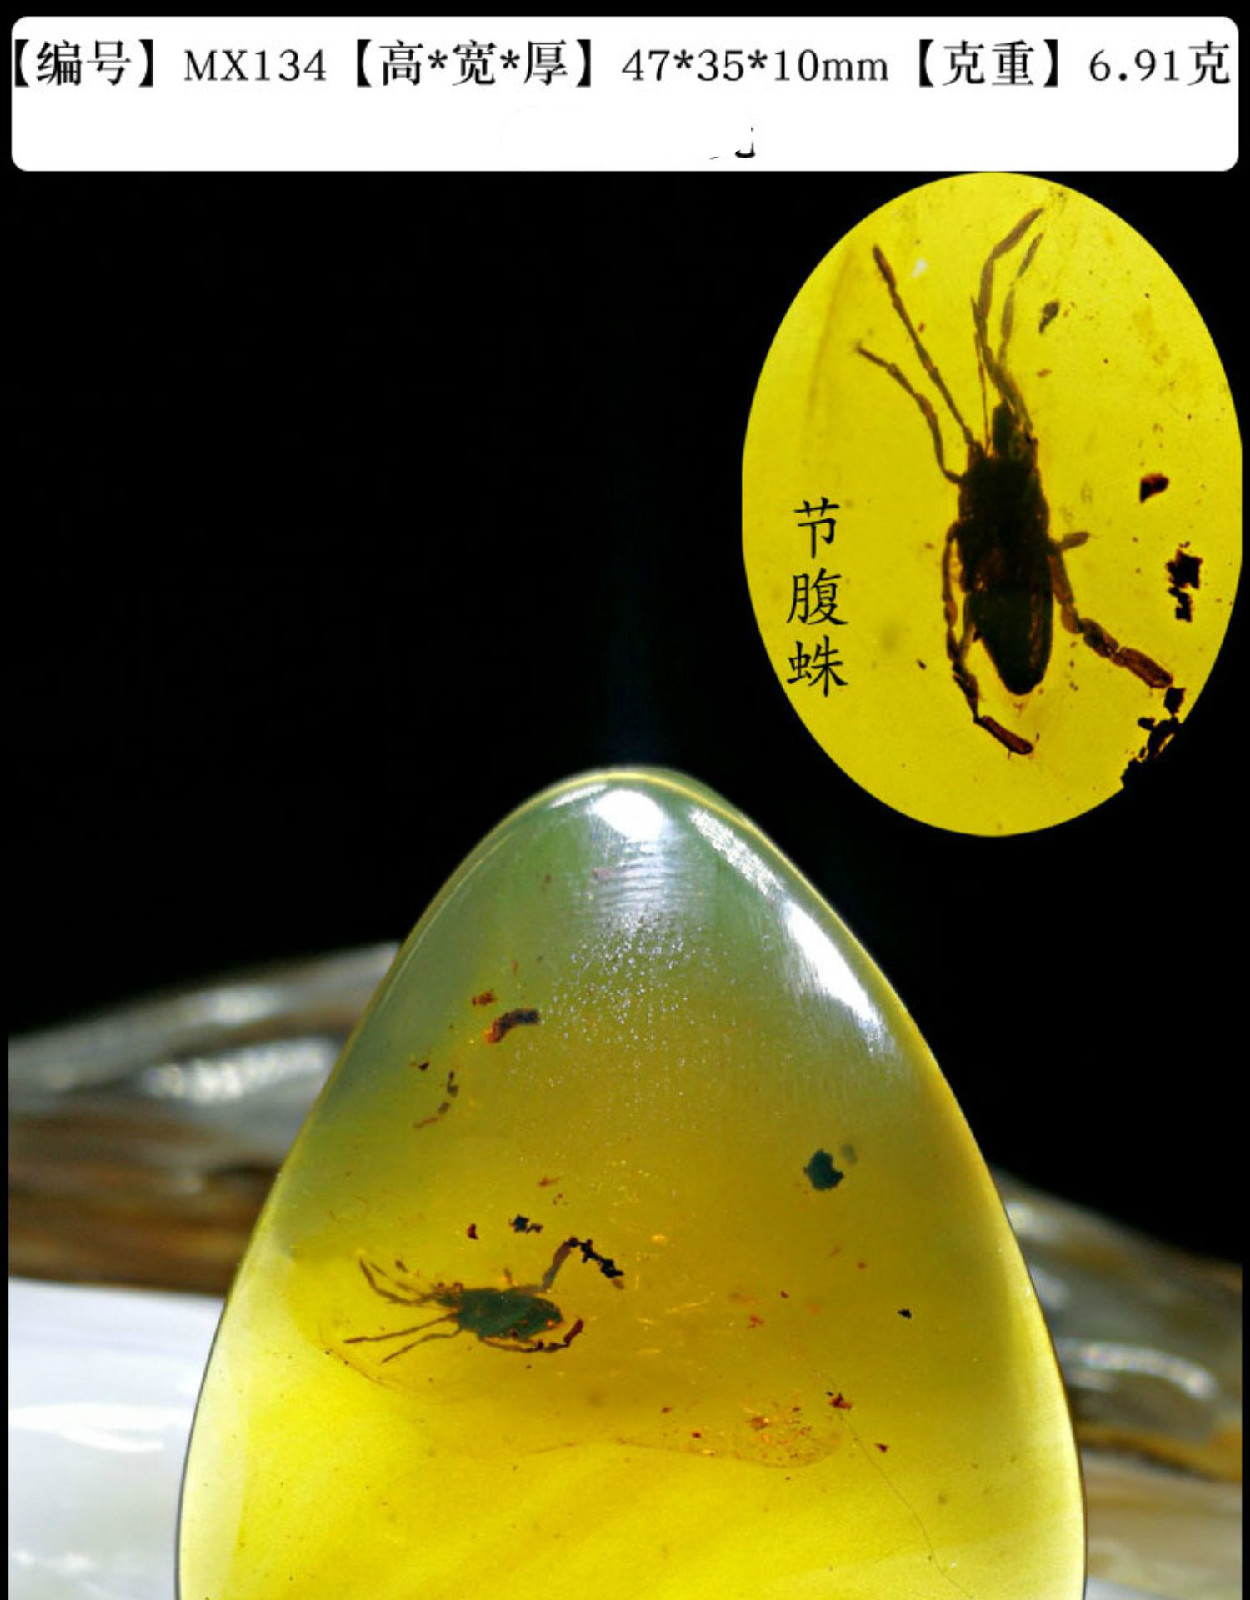 虫珀琥珀吊坠虫珀蜘蛛活水胆植物昆虫动物琥珀化石蛋面水滴sn0684mx